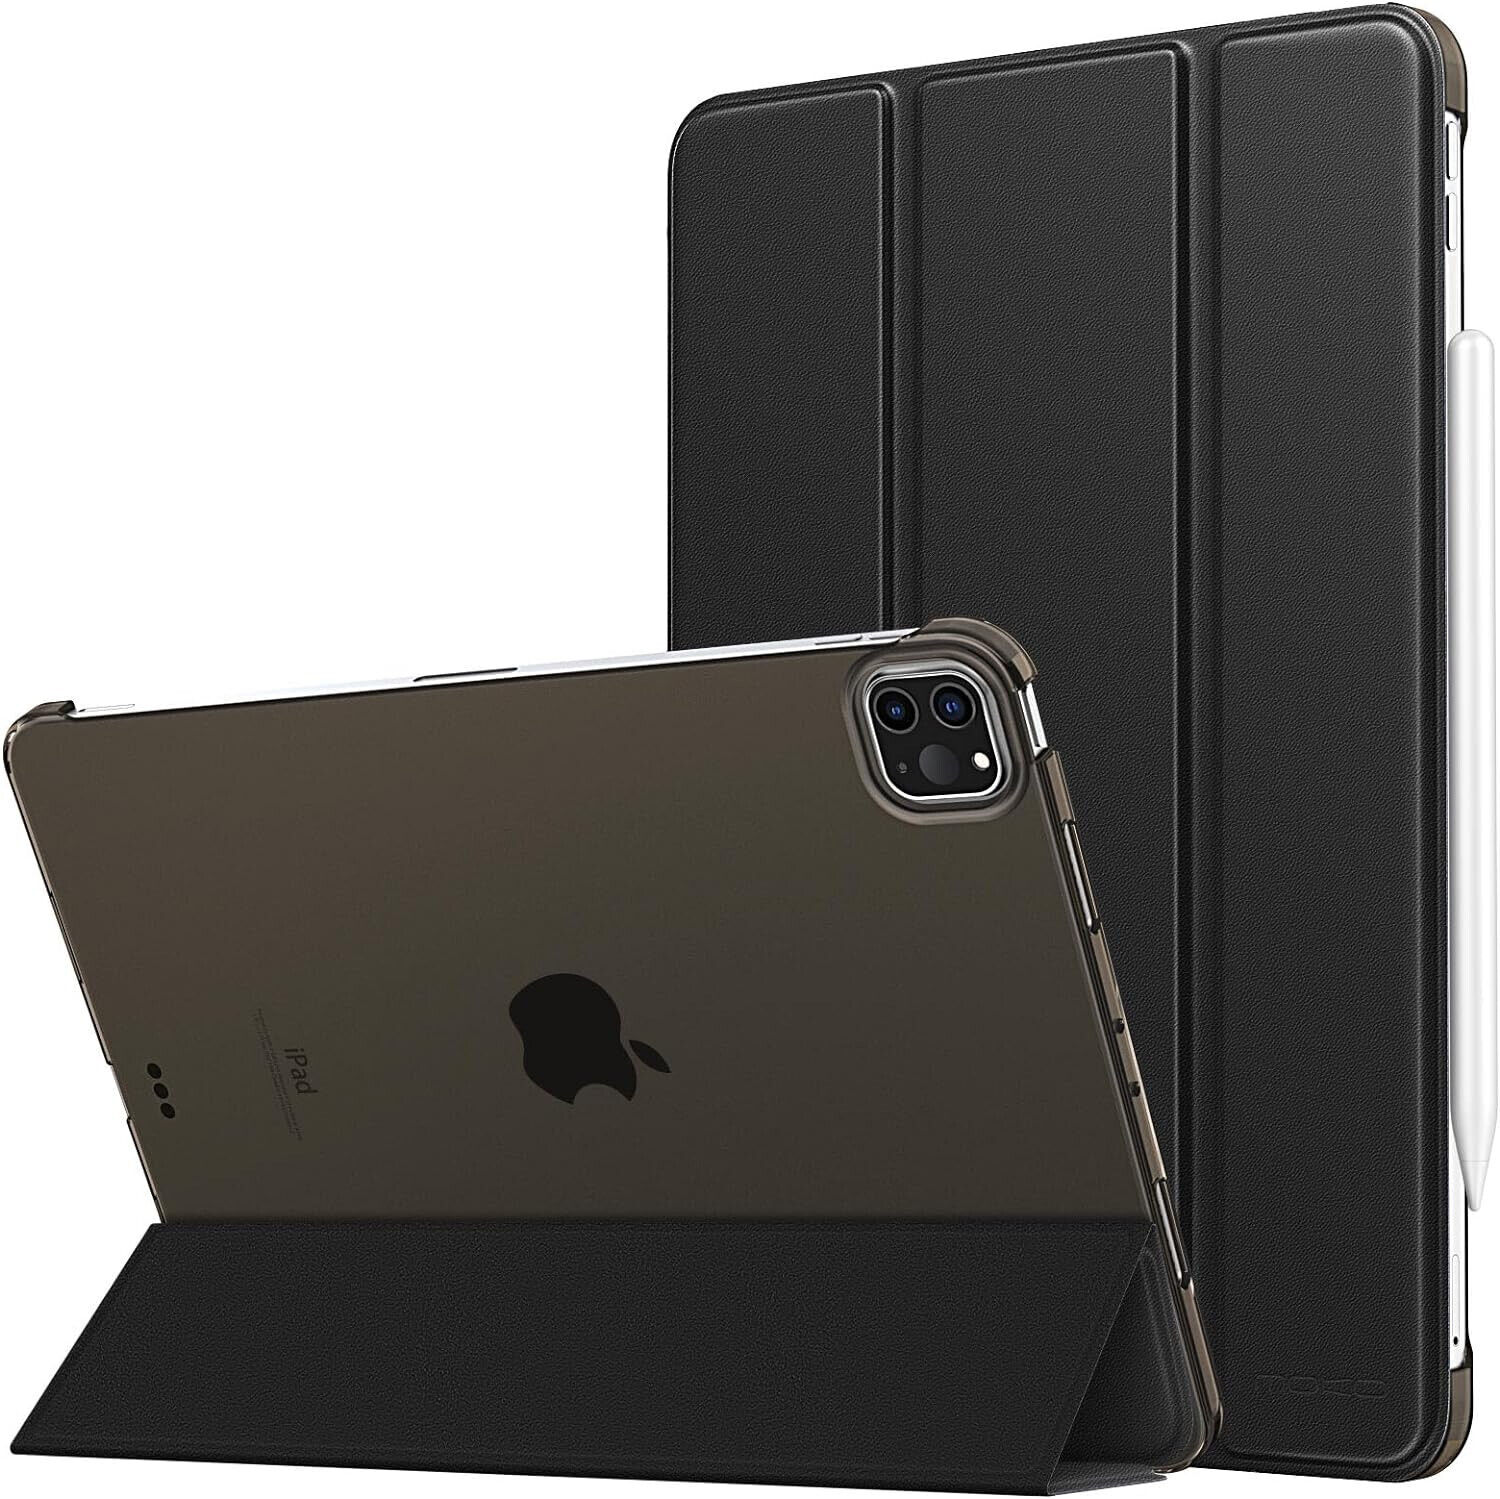 MOKO 3Z Case for iPad Pro 11 2020 New Black